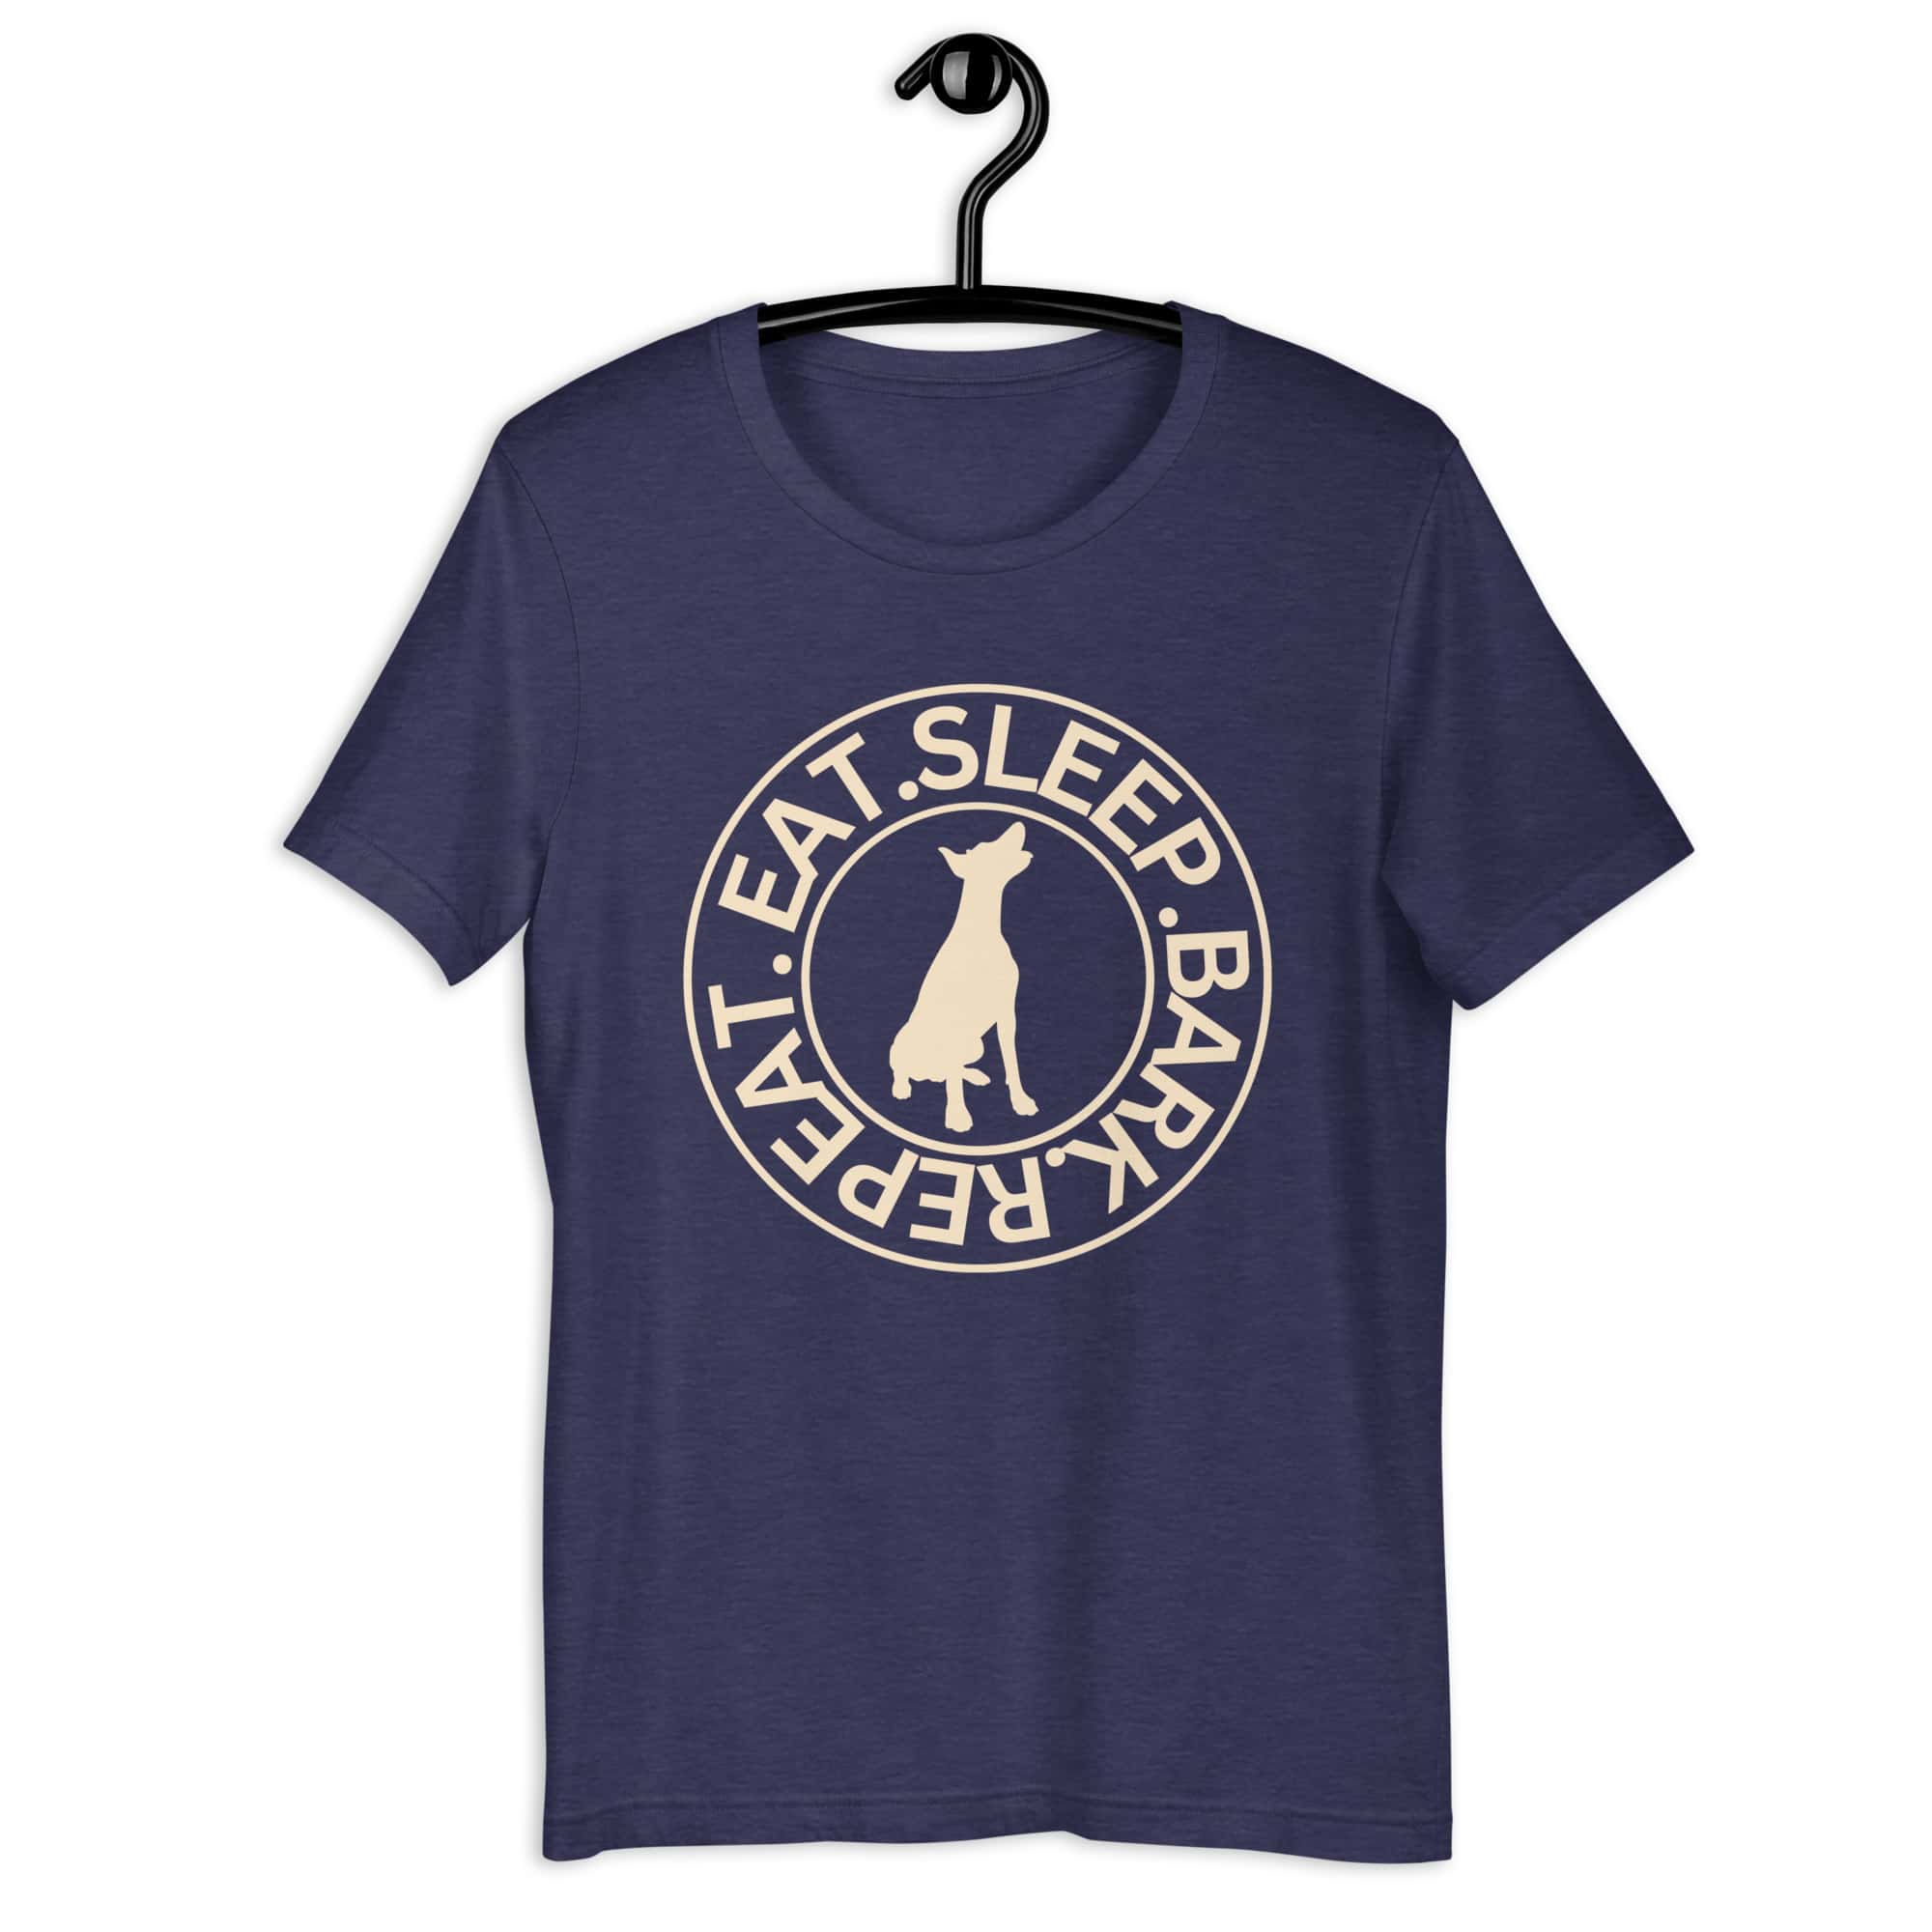 Eat Sleep Bark Repeat Terrier Unisex T-Shirt. Heather Midnight Navy